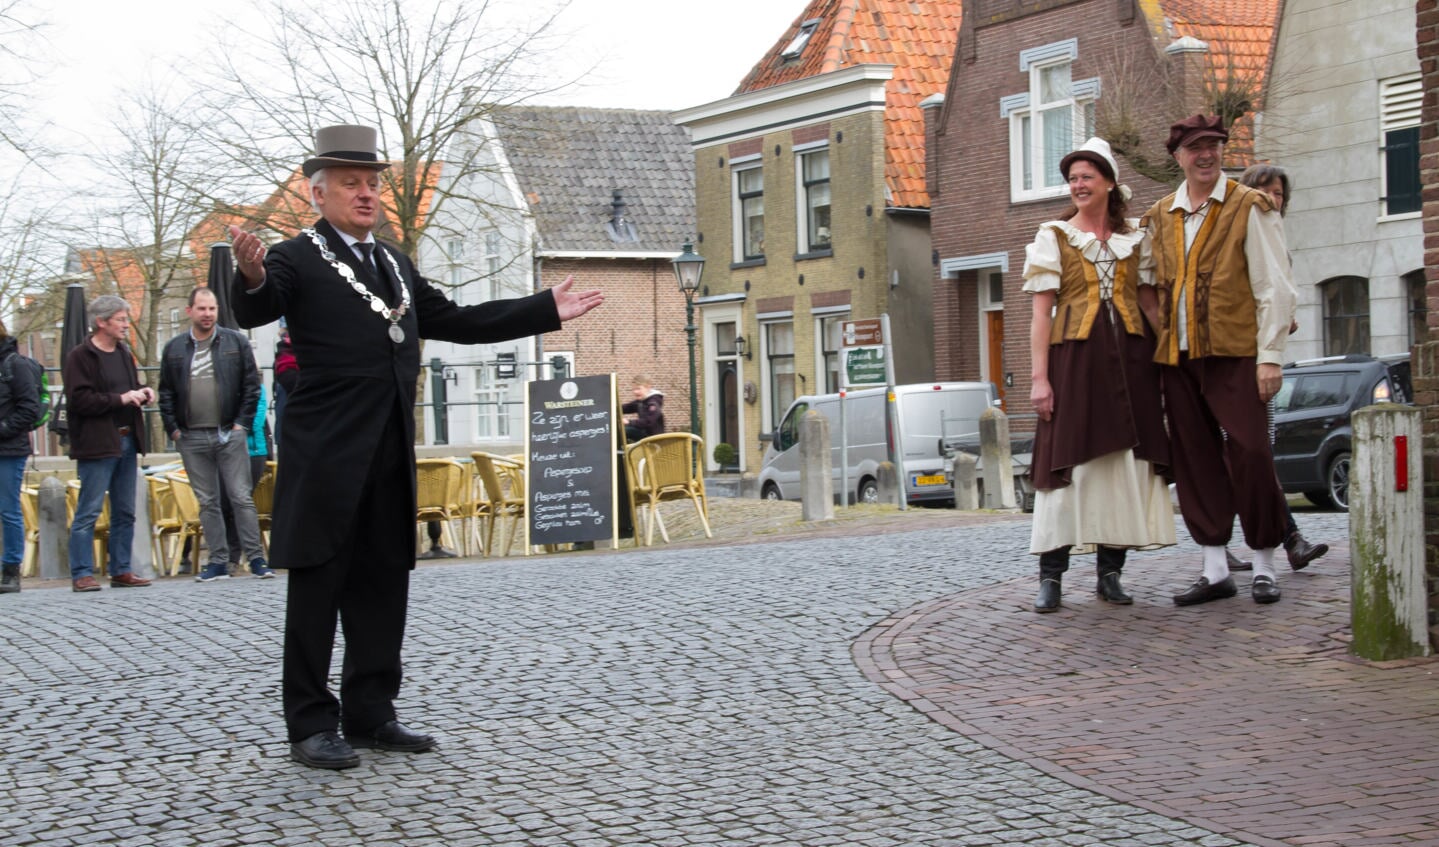 Archieffoto. Burgemeester Dirk van der Borg in Nieuwpoort, tijdens een historisch evenement in 2016.